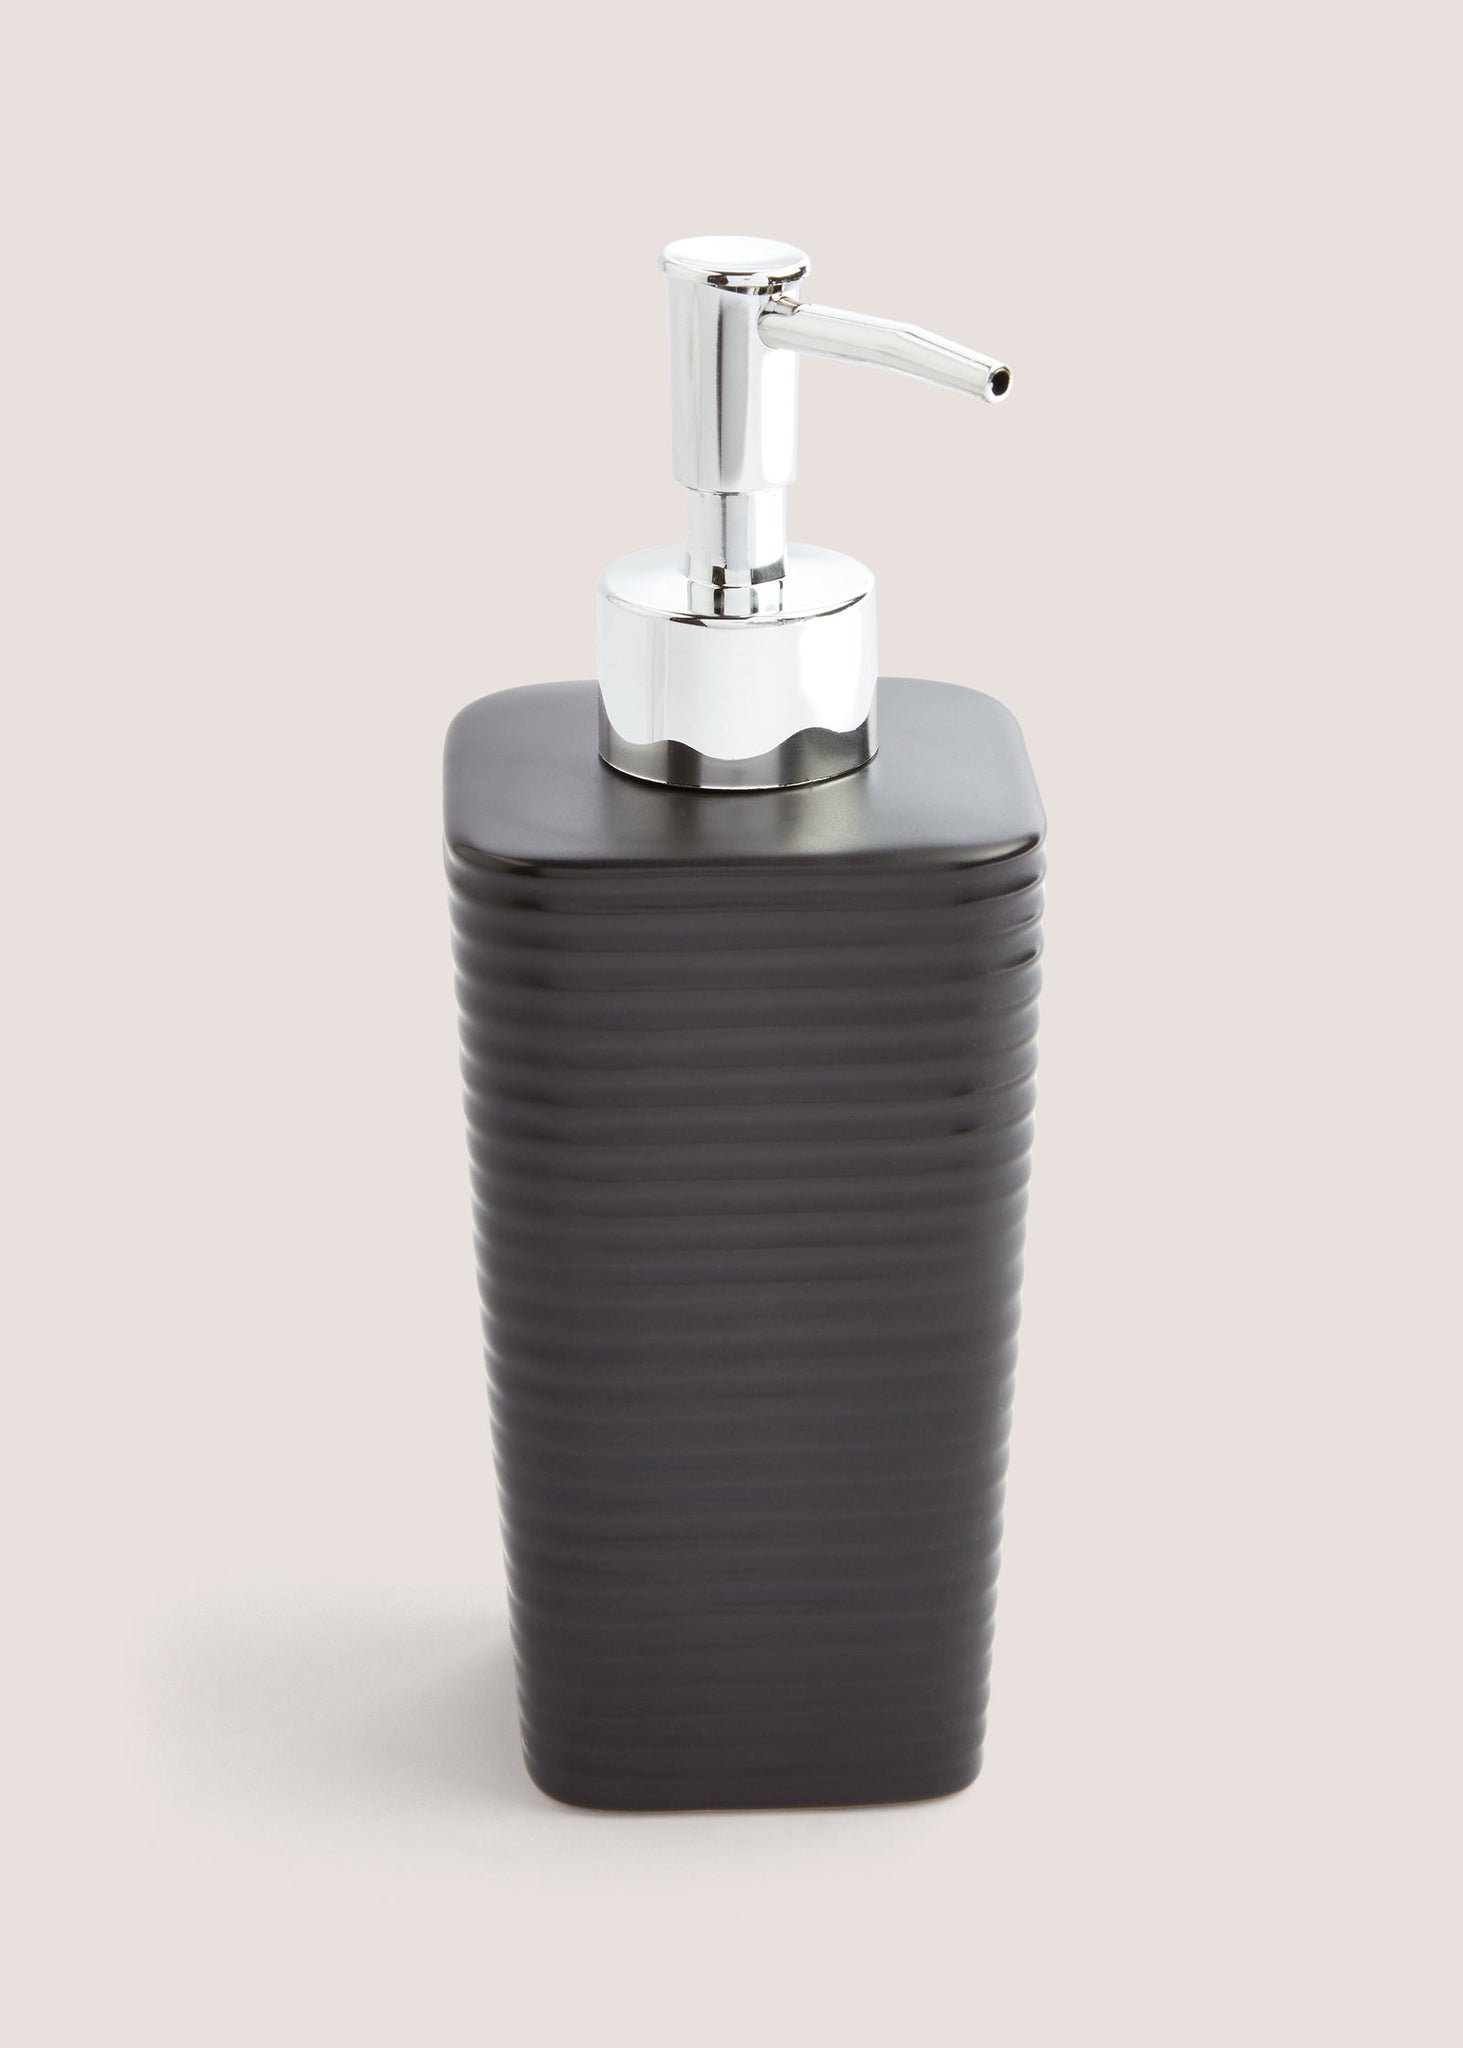 Black Ceramic Soap Dispenser (18cm x 7.5cm x 7.5cm) M814710